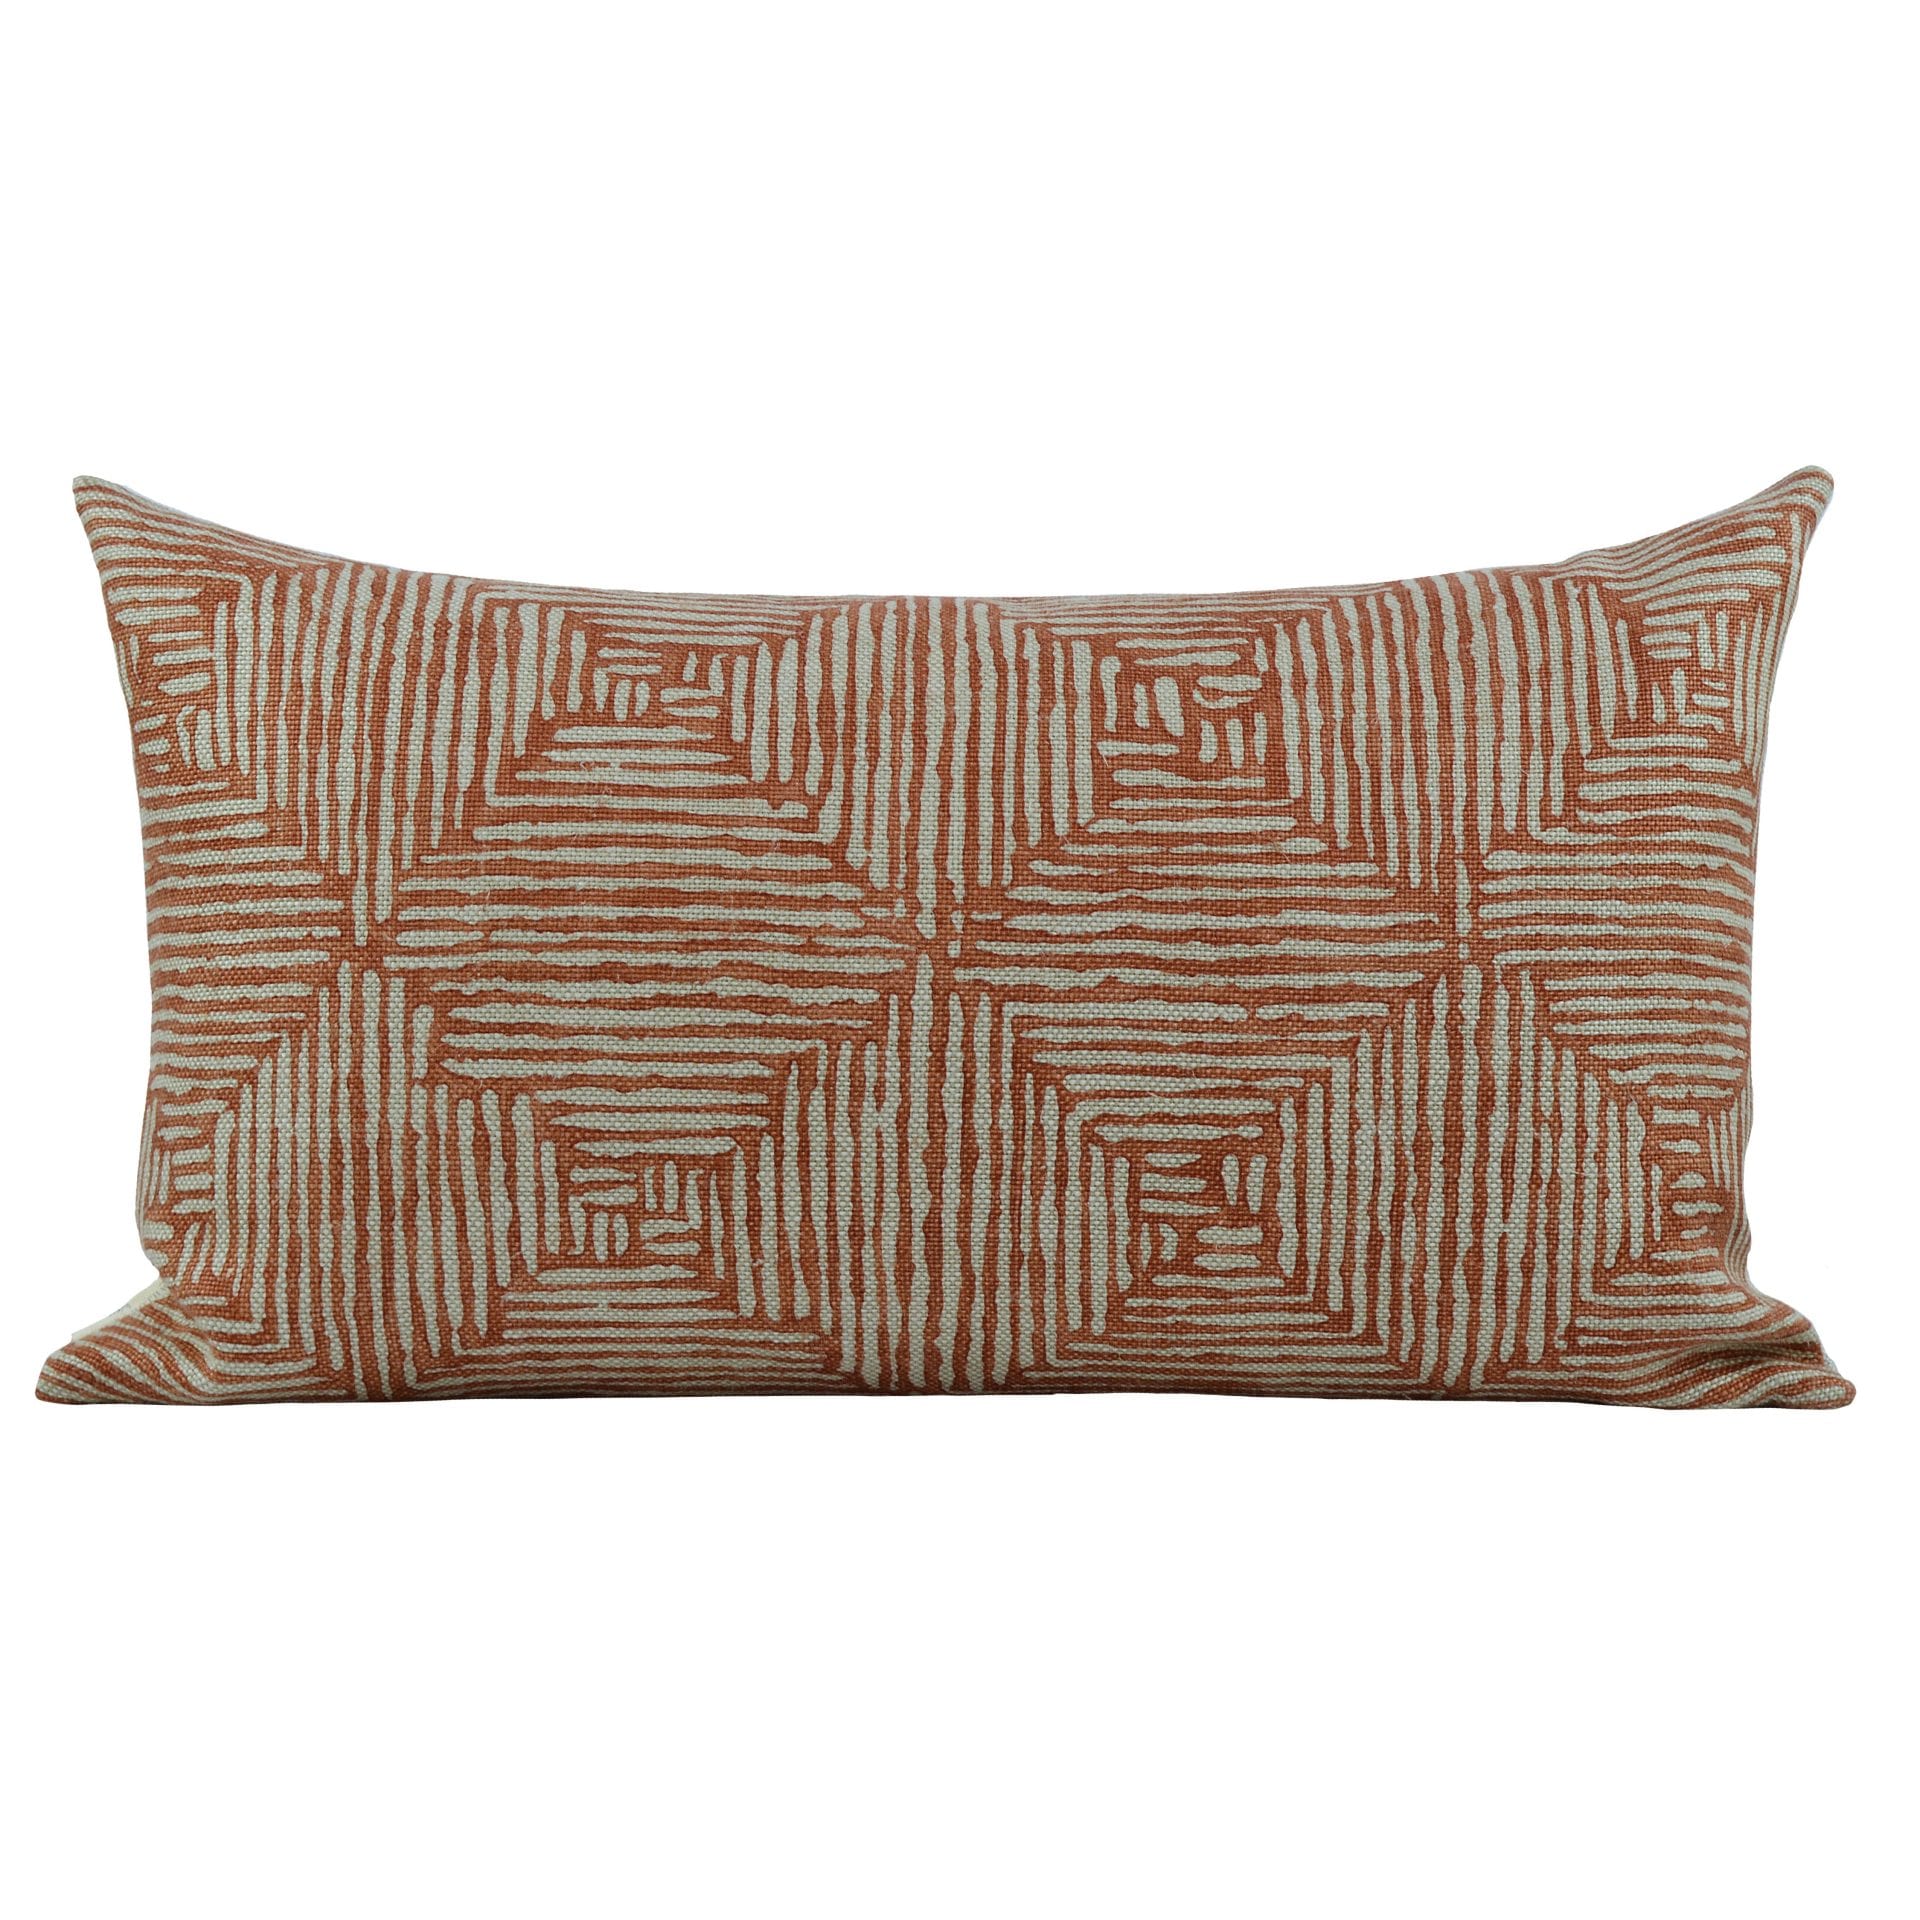 Burnt Orange and Ecru Decorative Pillows, 12x18 Lumbar Mudcloth